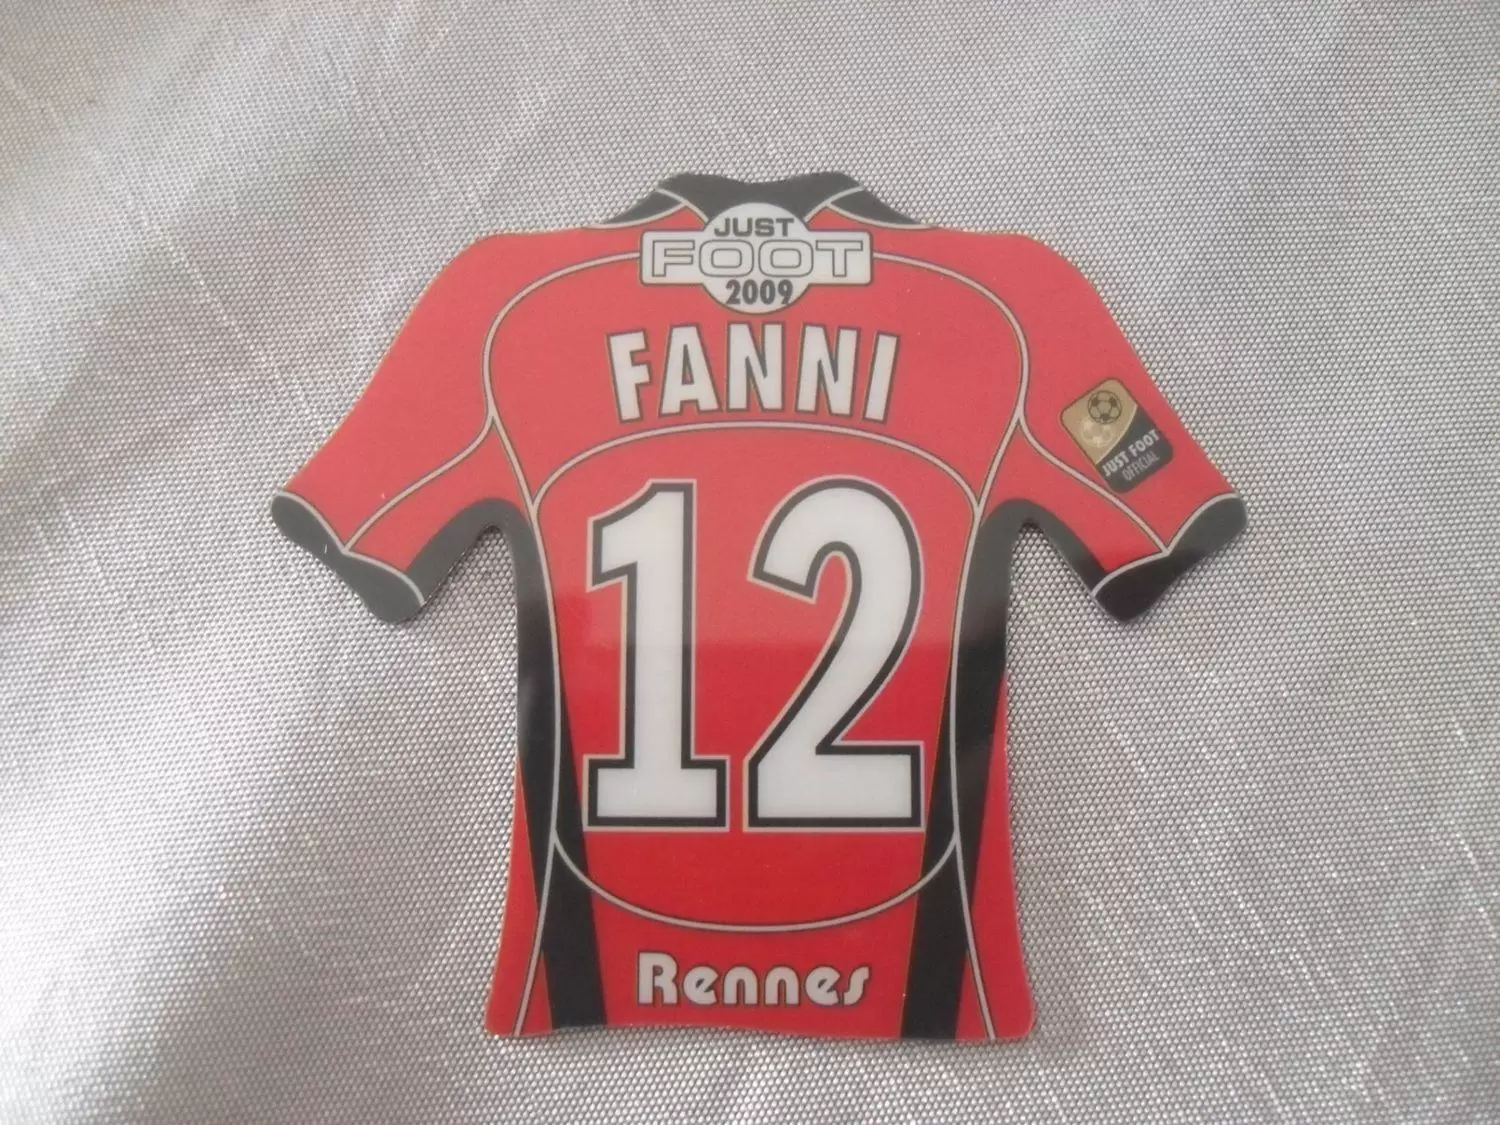 Just Foot 2008 - Rennes 12 - Fanni